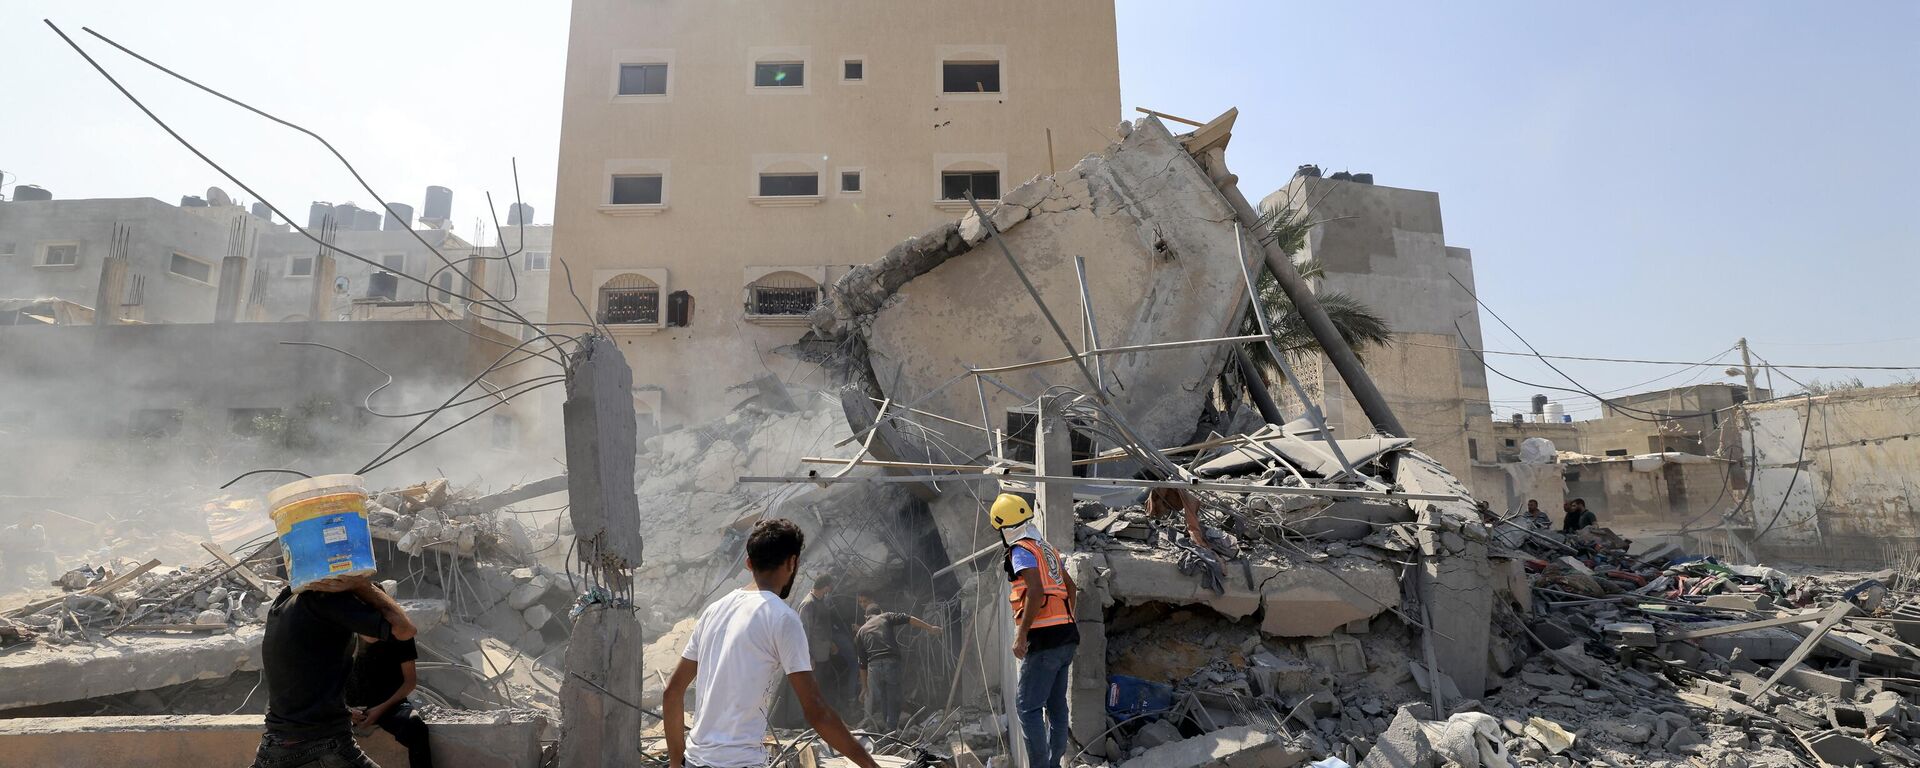 Палестинцы осматривают обломки рухнувшего здания после израильского удара в Хан-Юнисе на юге сектора Газа, 14 октября 2023 года - Sputnik Абхазия, 1920, 07.11.2023